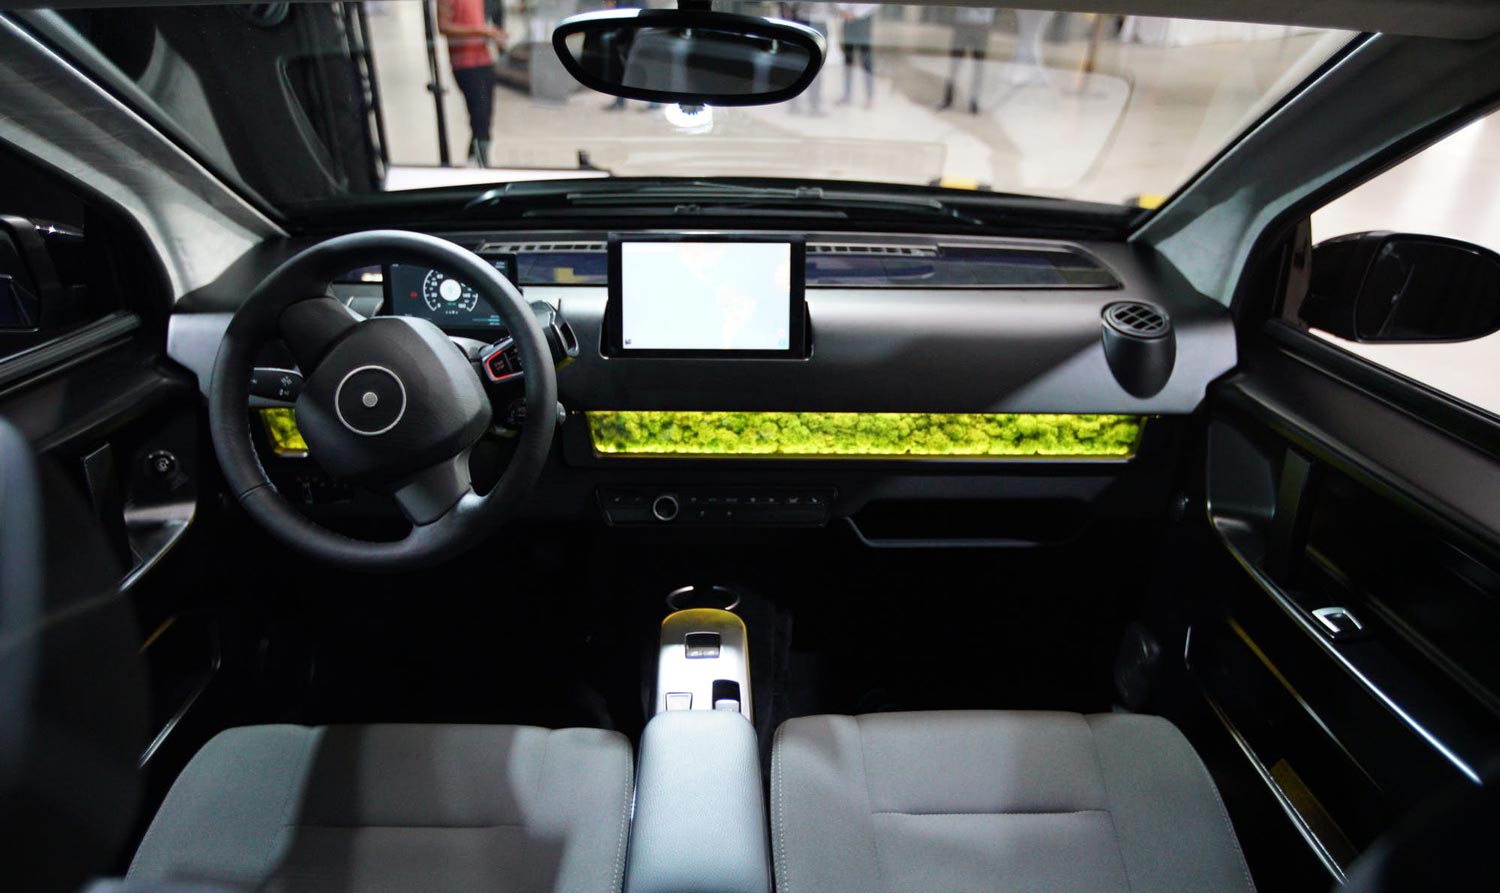 Представлен новый автомобиль Sono SION стоимостью €16000, работающий полностью от солнечных батарей